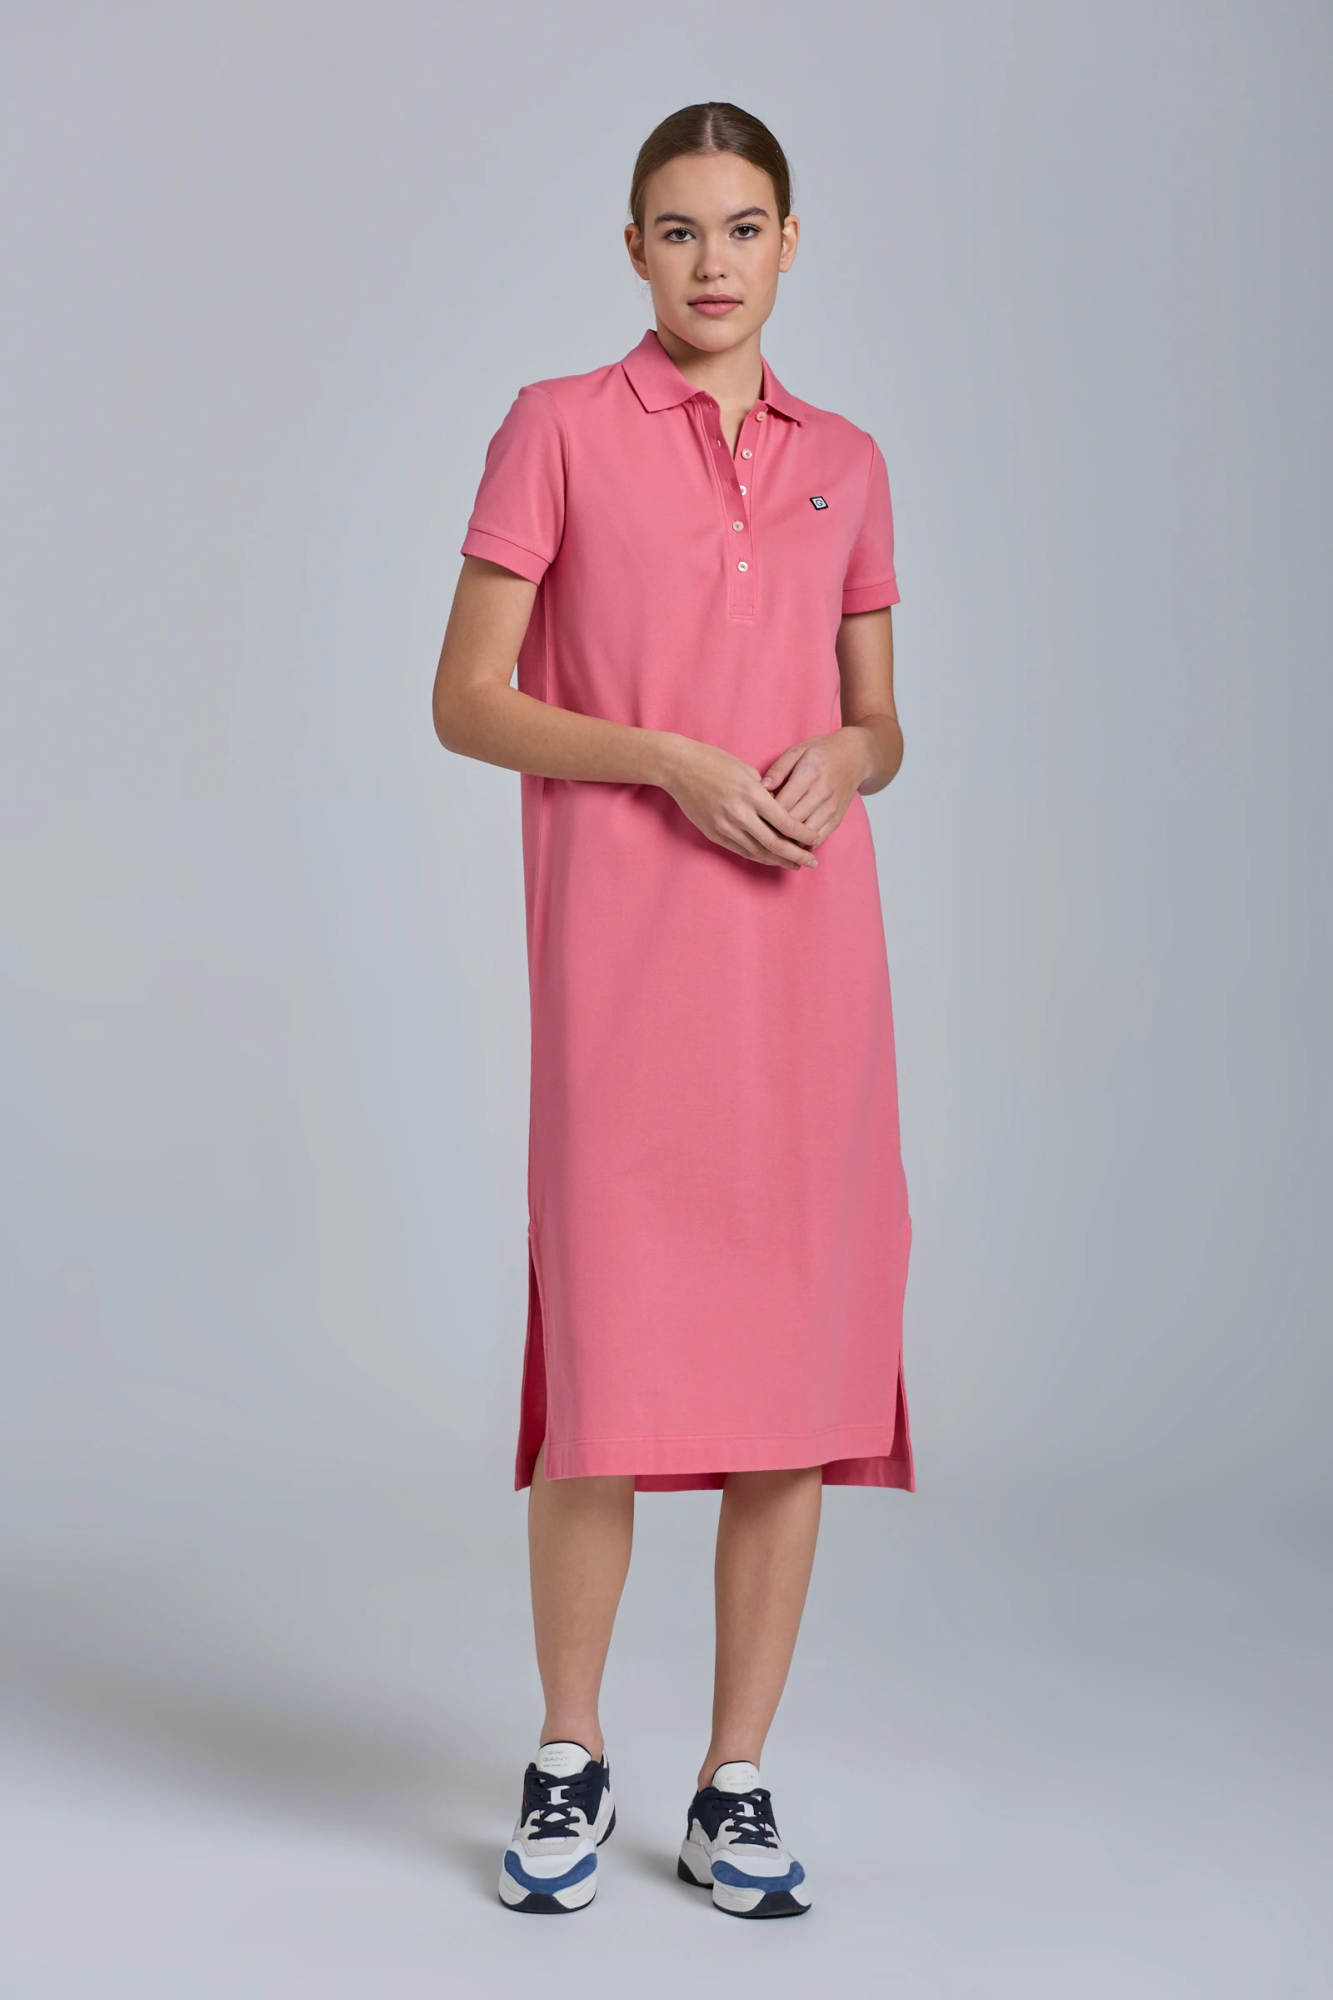 Женское платье Gant, розовое